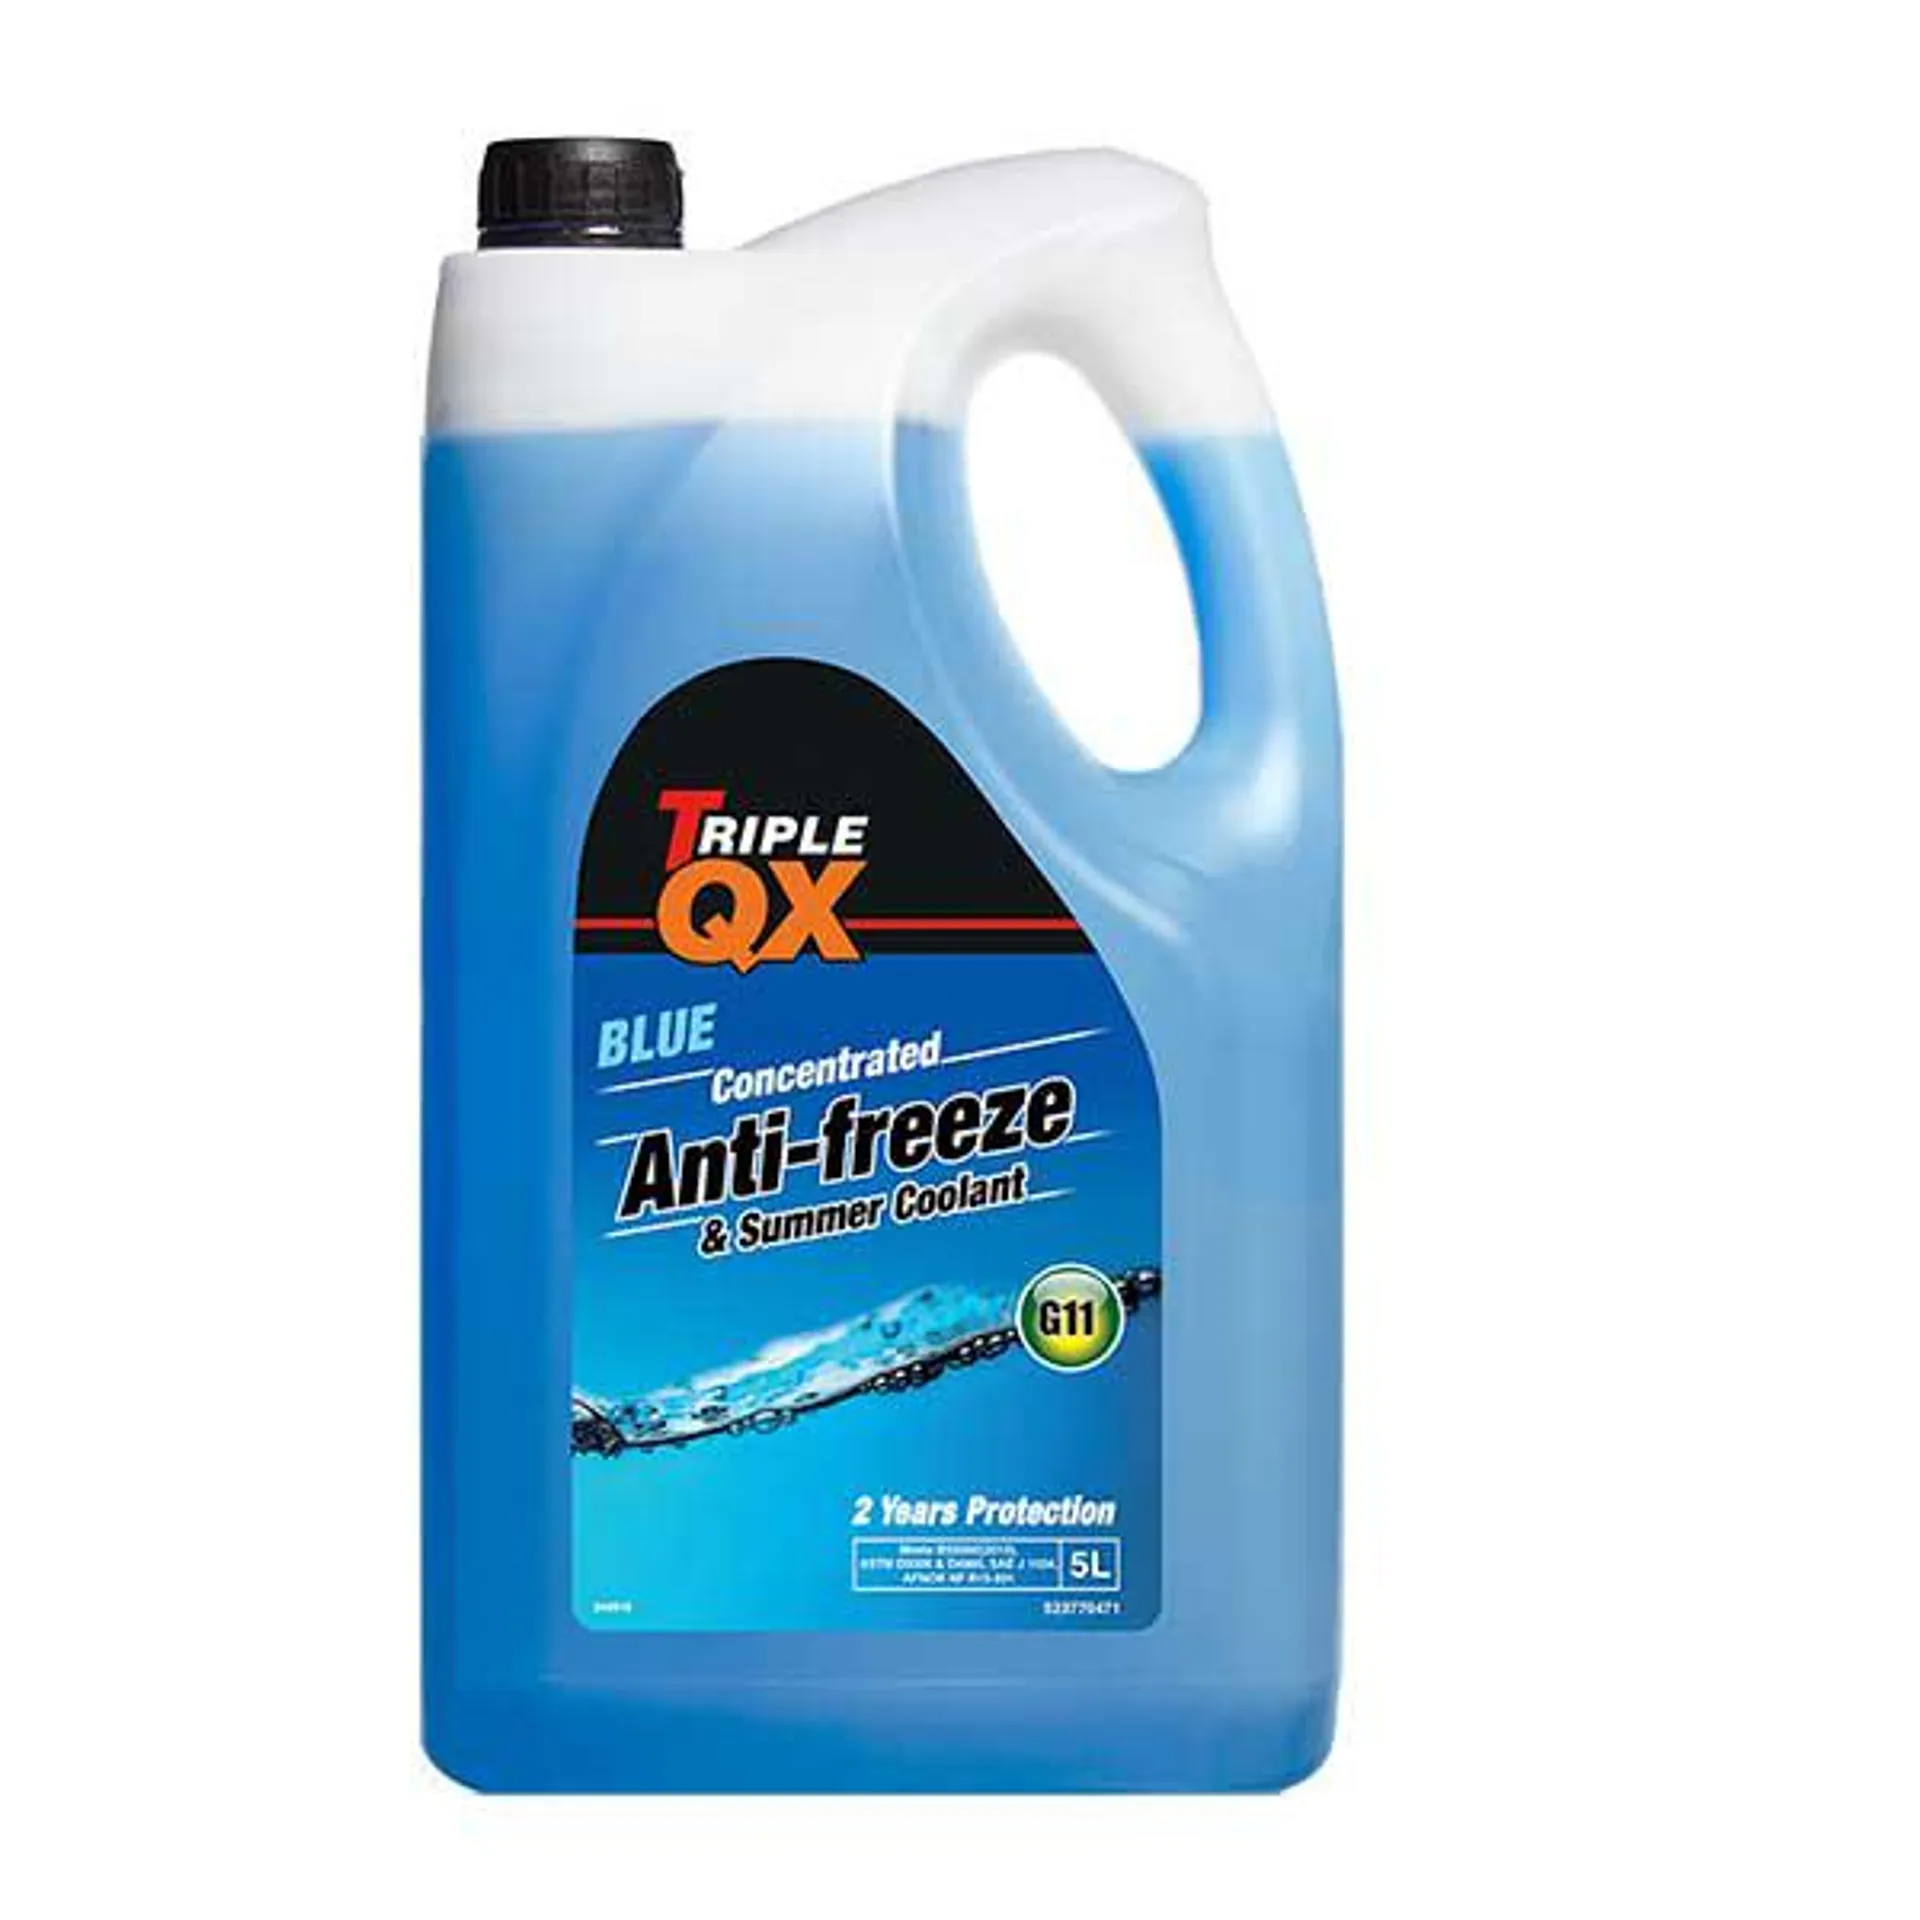 TRIPLE QX Blue Antifreeze/Coolant 5Ltr